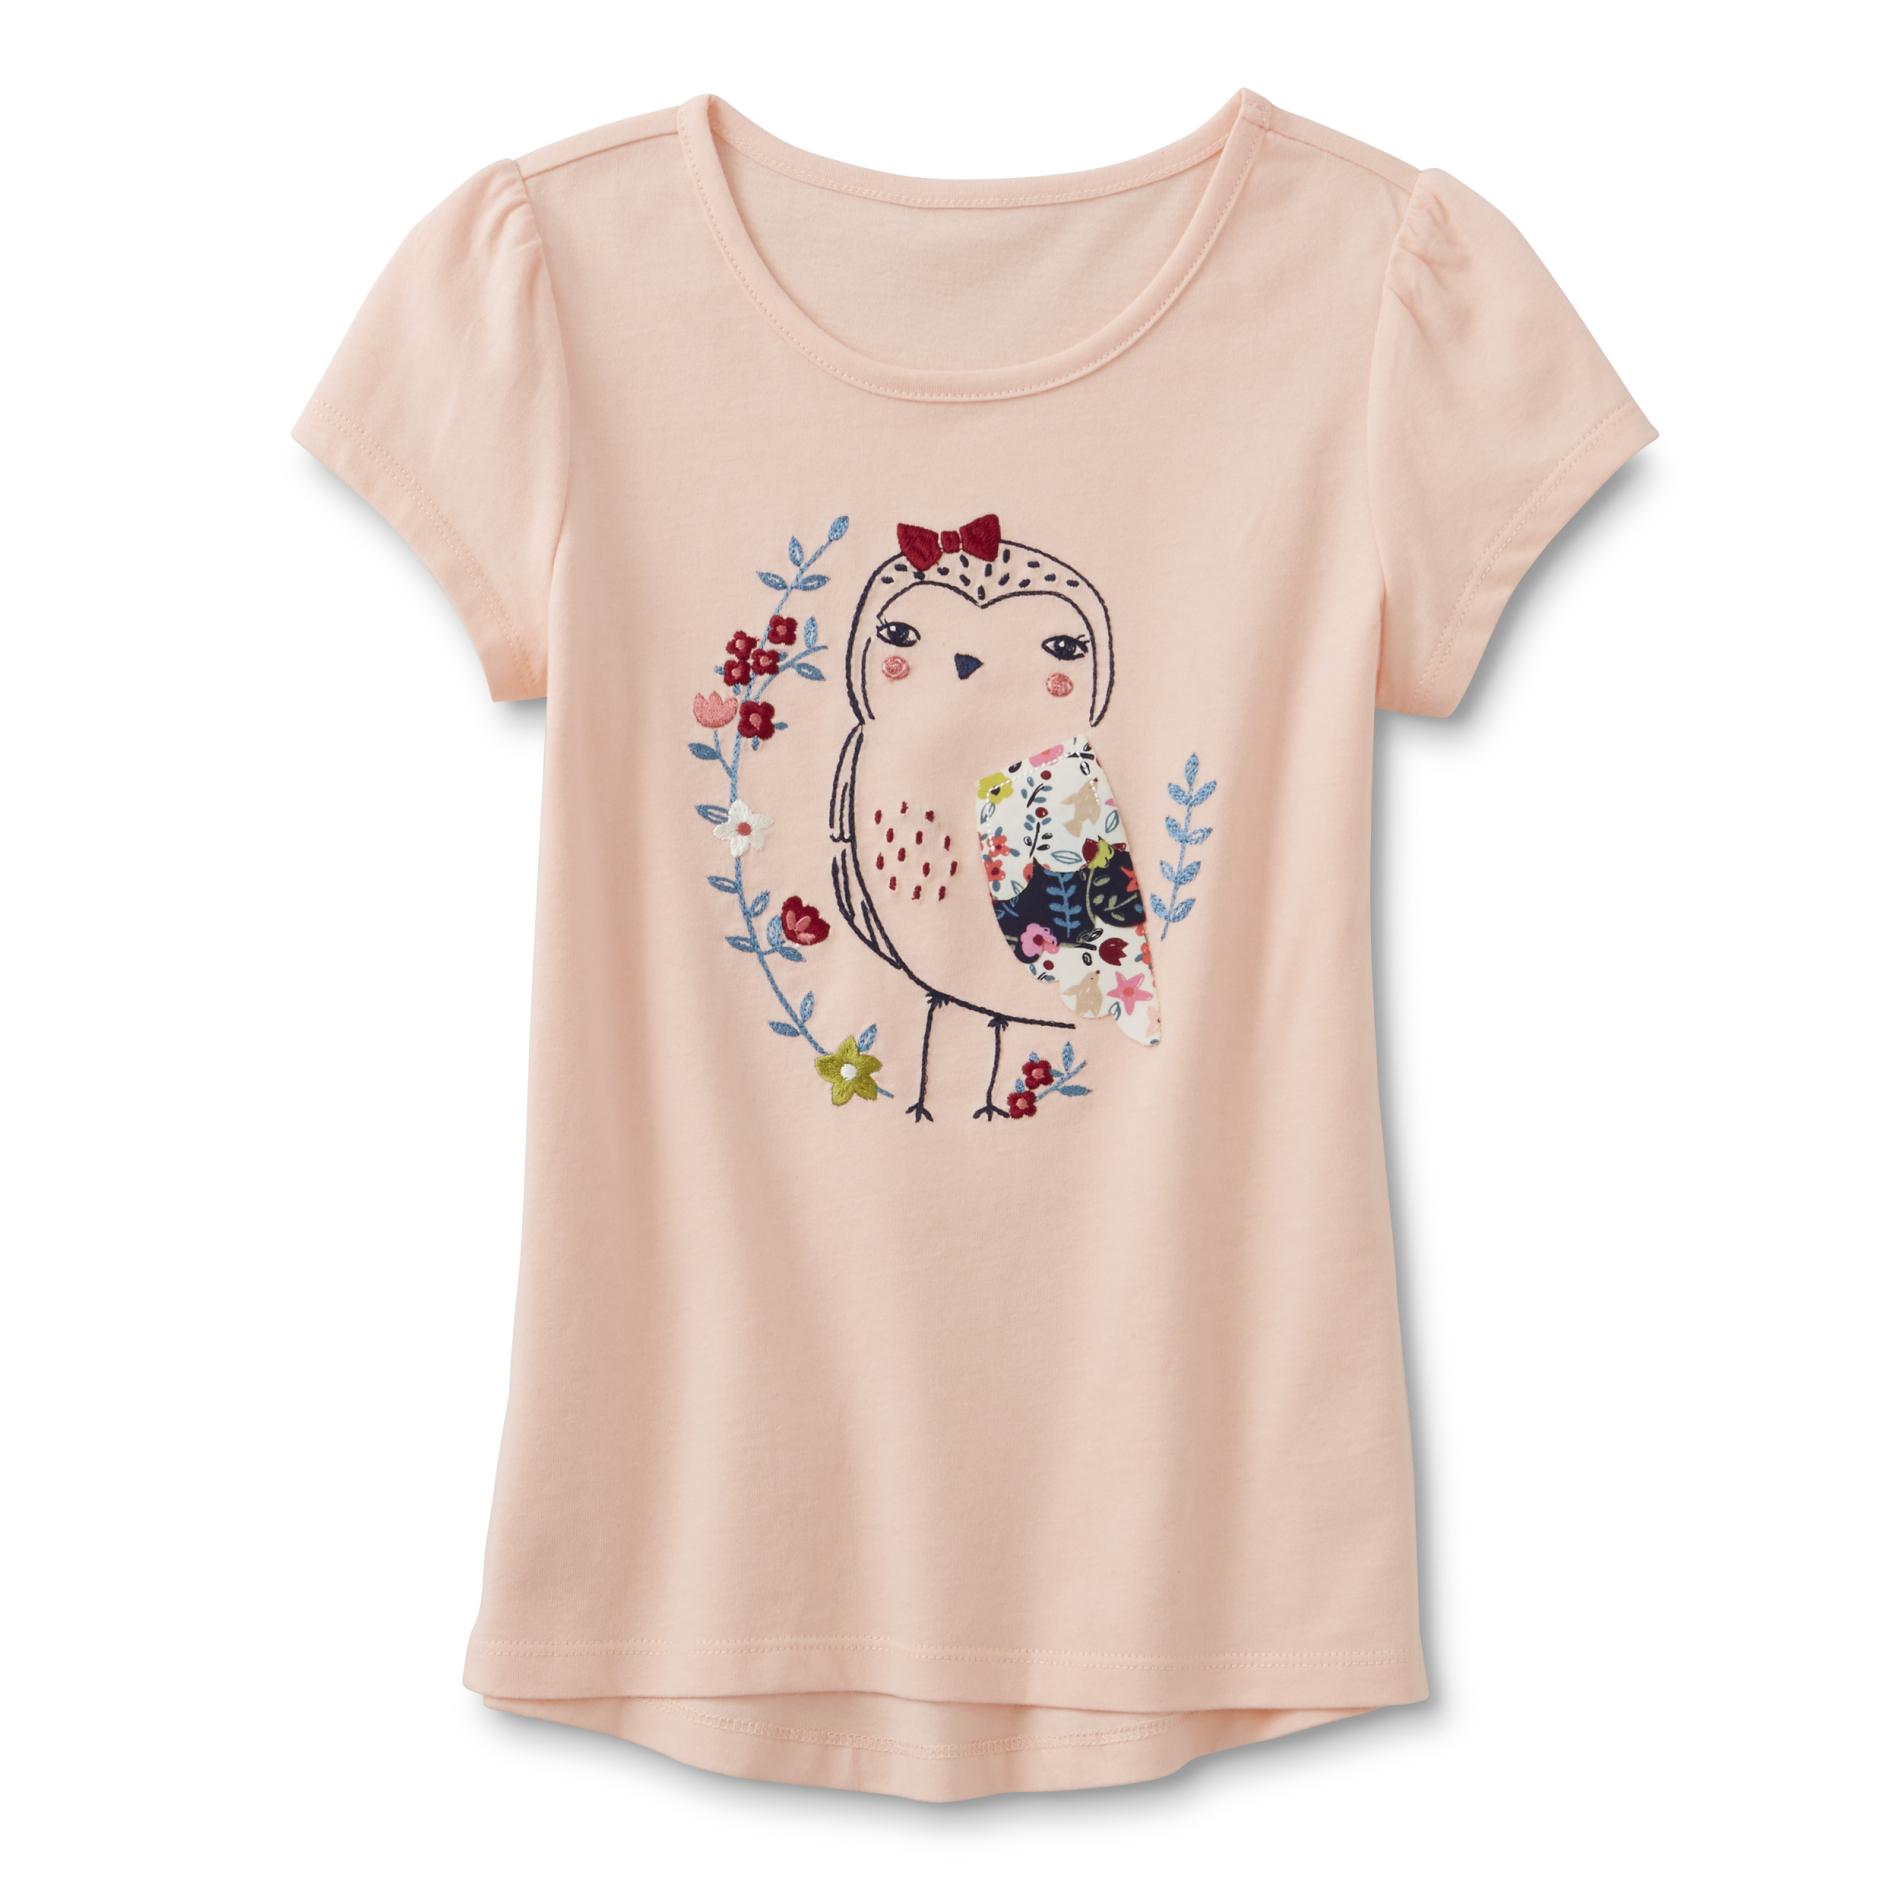 Toughskins Infant & Toddler Girl's Embellished T-Shirt - Owl